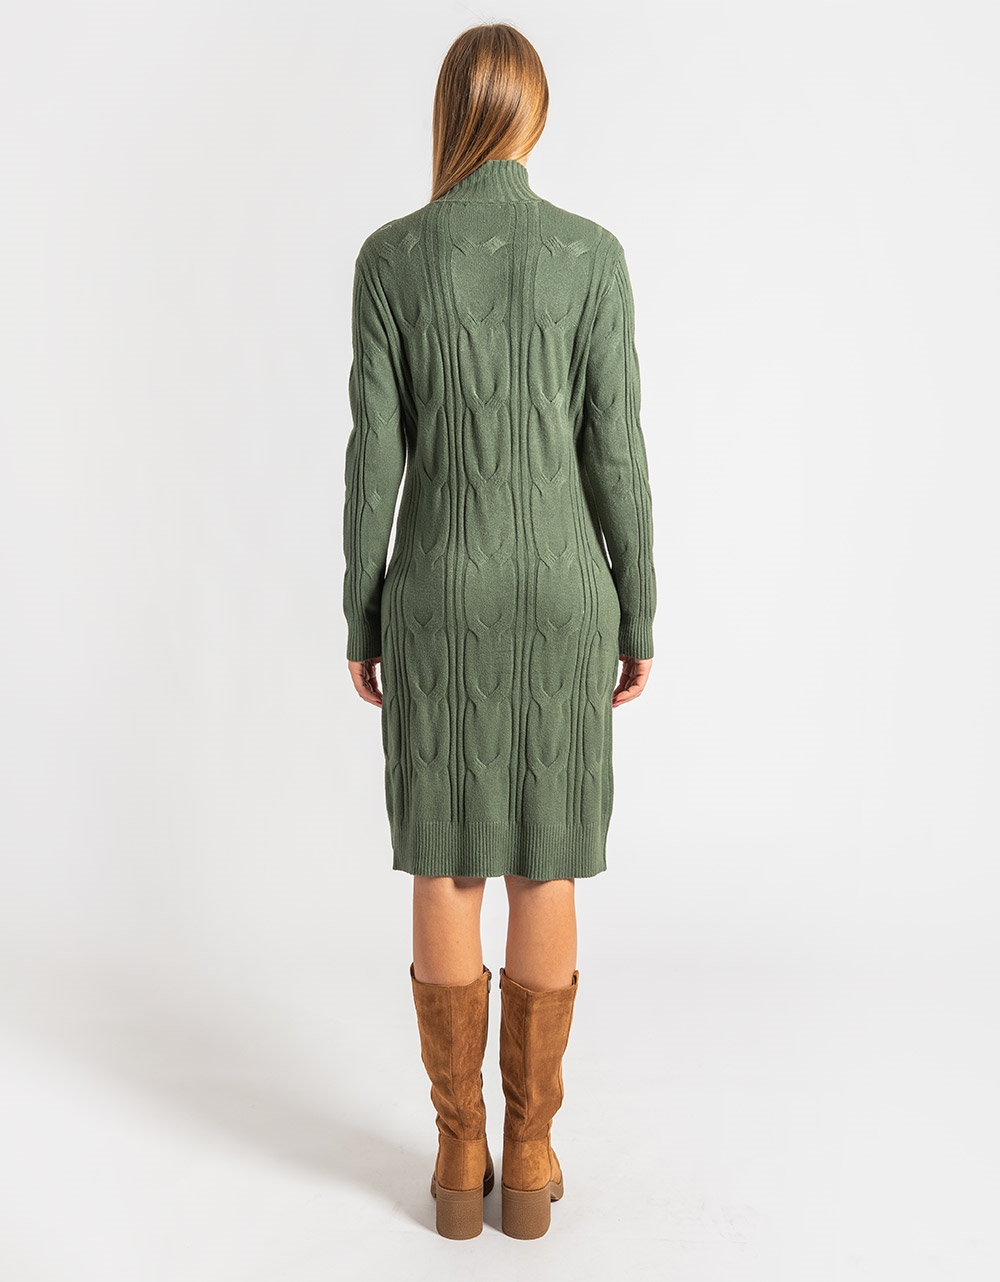 Εικόνα από Midi φόρεμα με σχέδιο πλέξης από βισκόζη Πράσινο